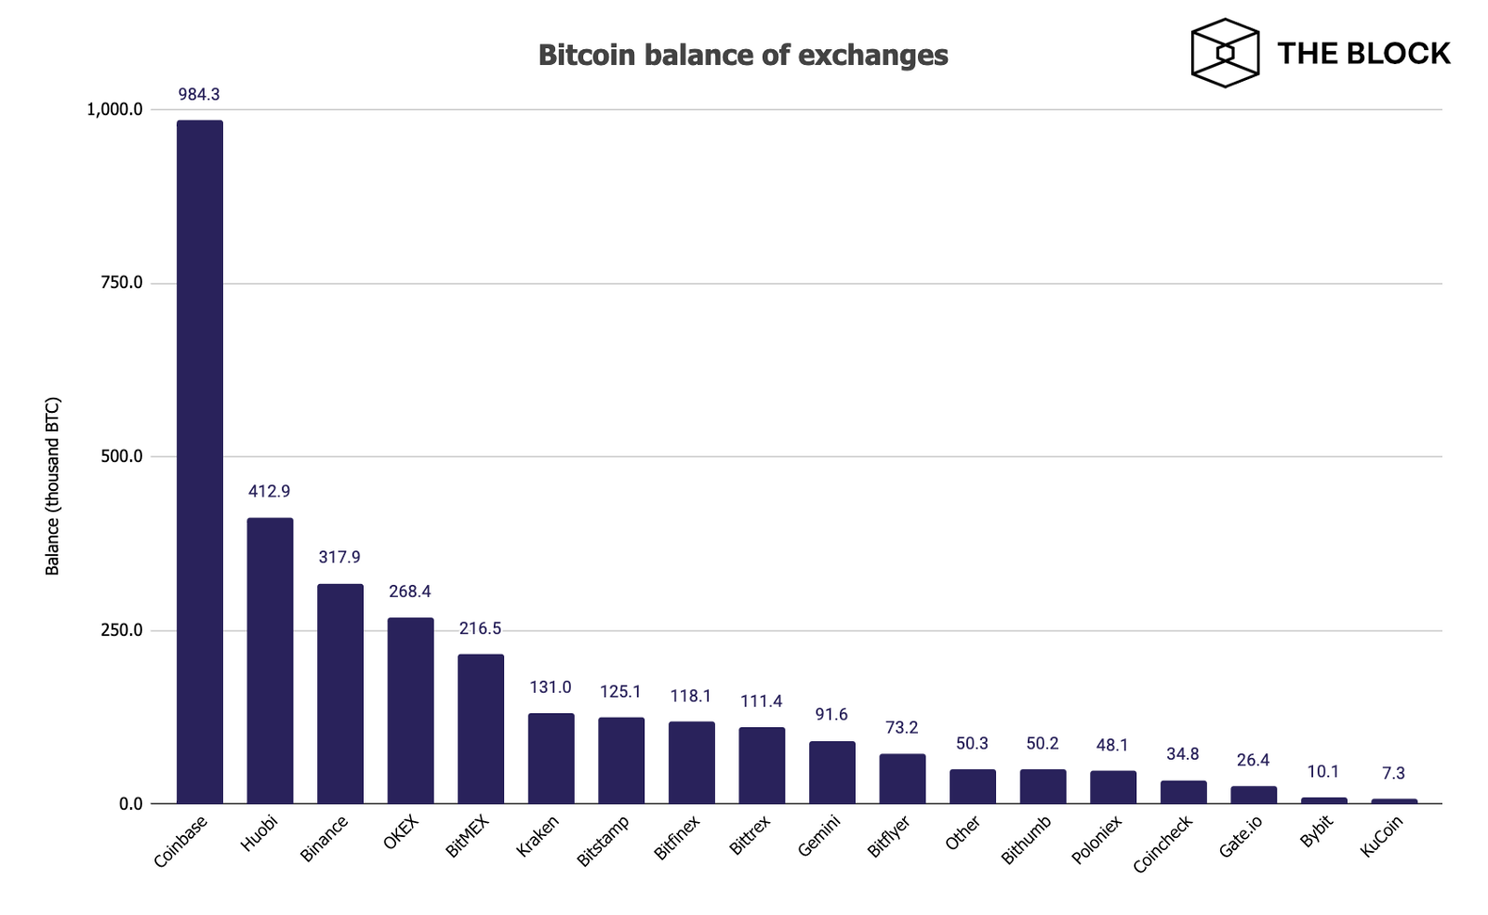 Coinbase grootste Bitcoin beurs met 984.300 BTC in beheer